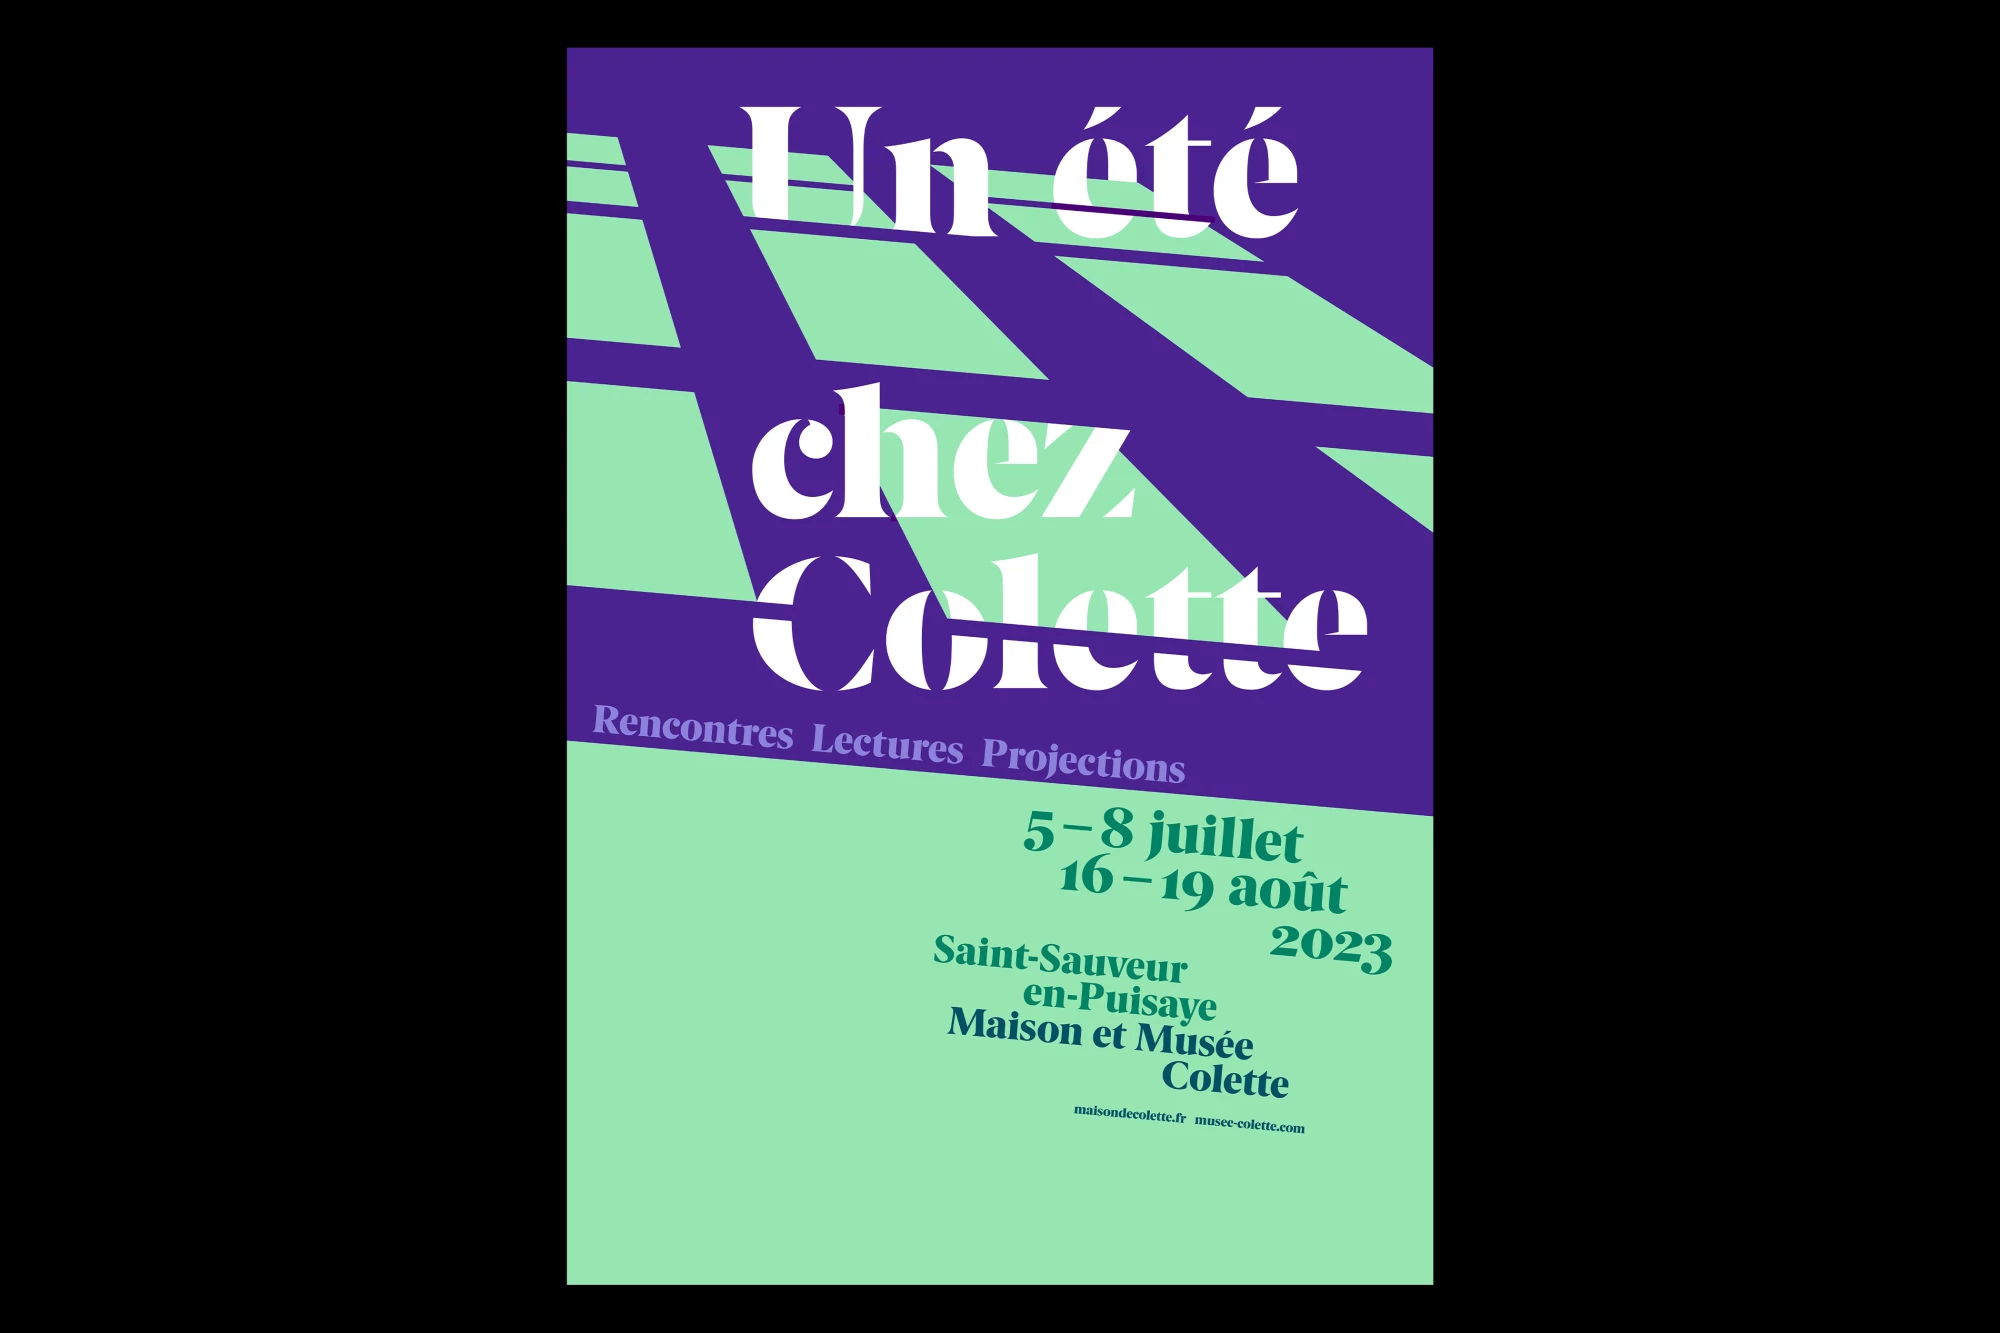 Léo Grunstein - A Summer at Colette’s, Festival, 2023, Maison de Colette, Poster, Publication, Branding, 2023